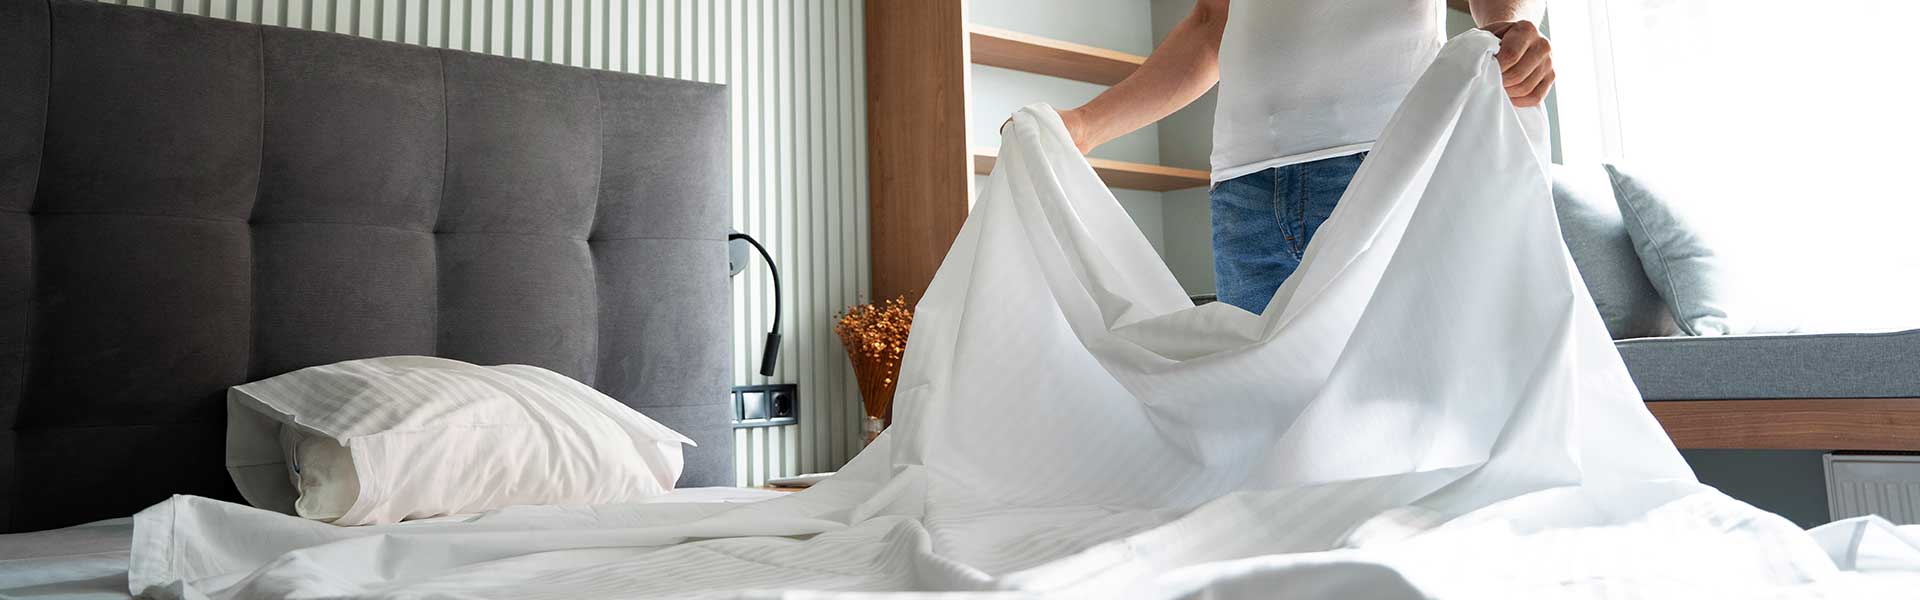 Consejos para lavar las sábanas de la mejor manera